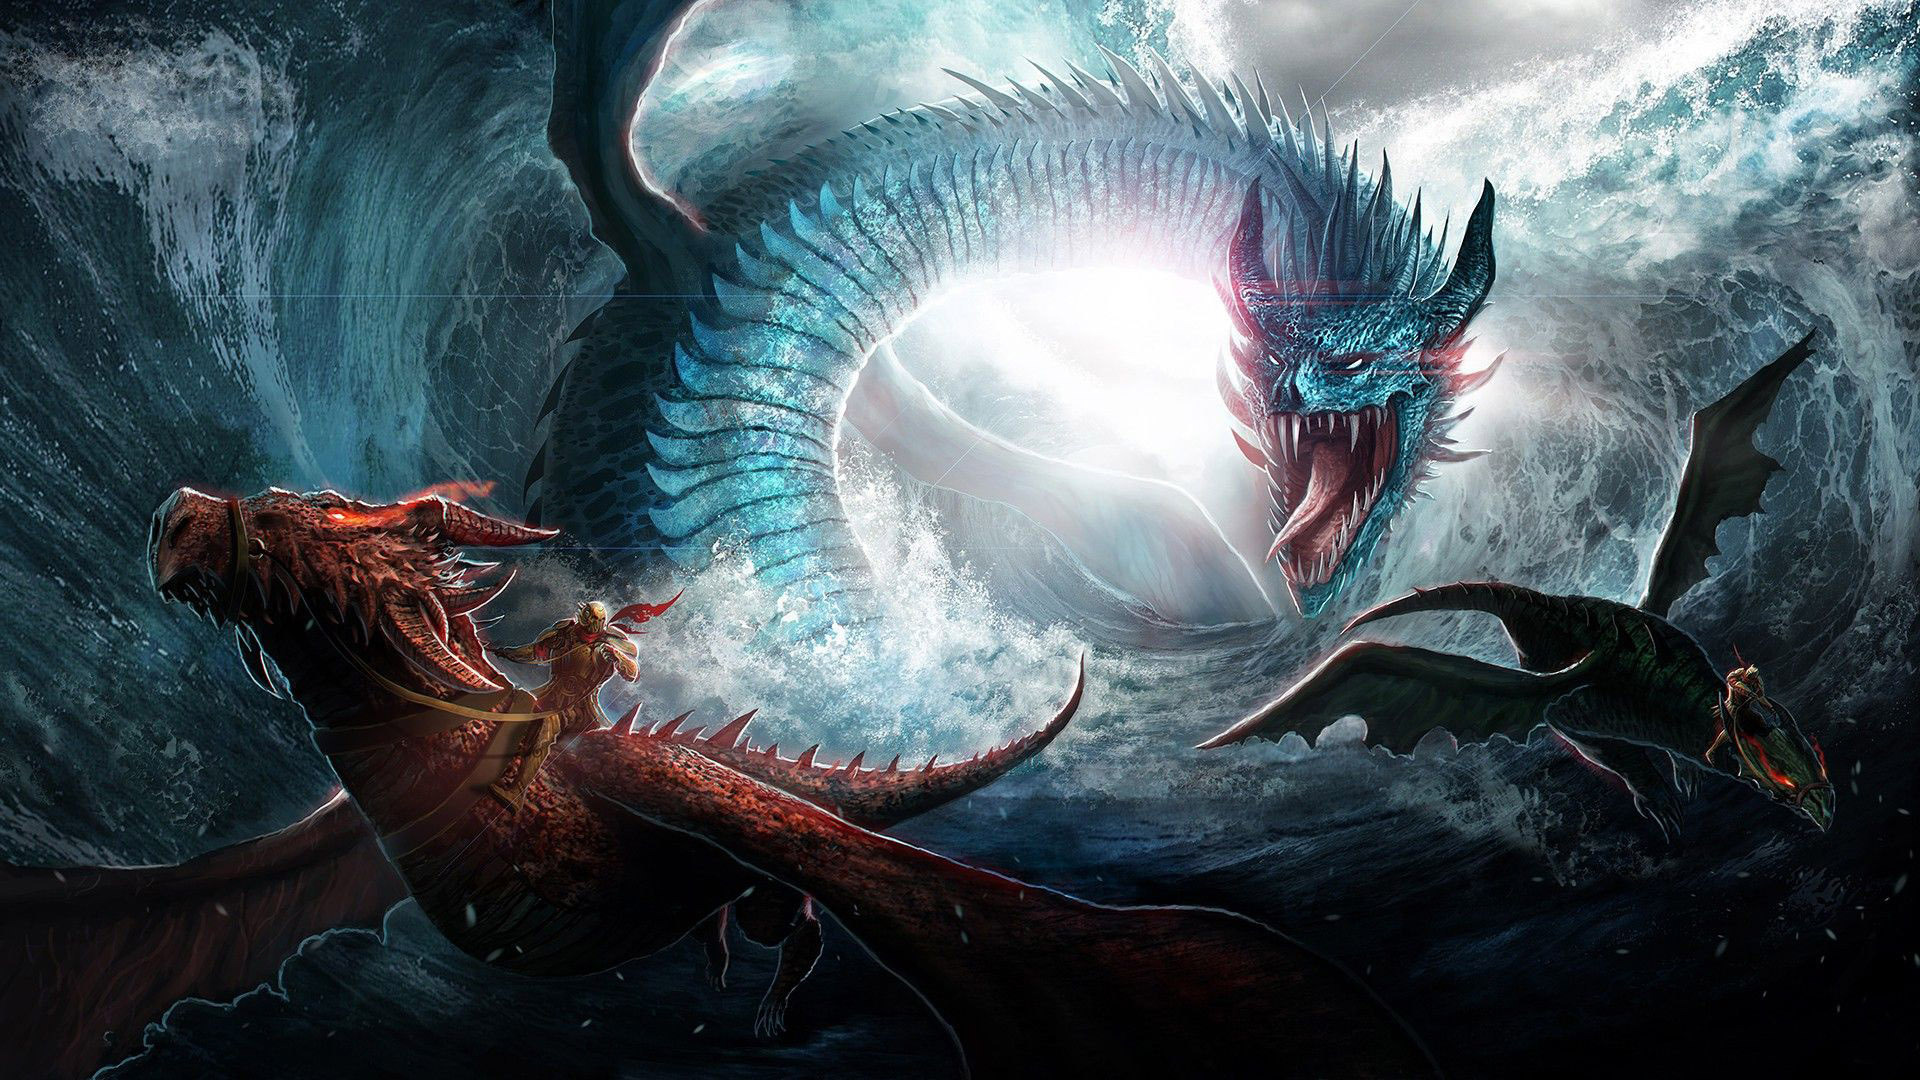 dragon wallpaper para android,continuar,cg artwork,mitología,personaje de ficción,criatura mítica